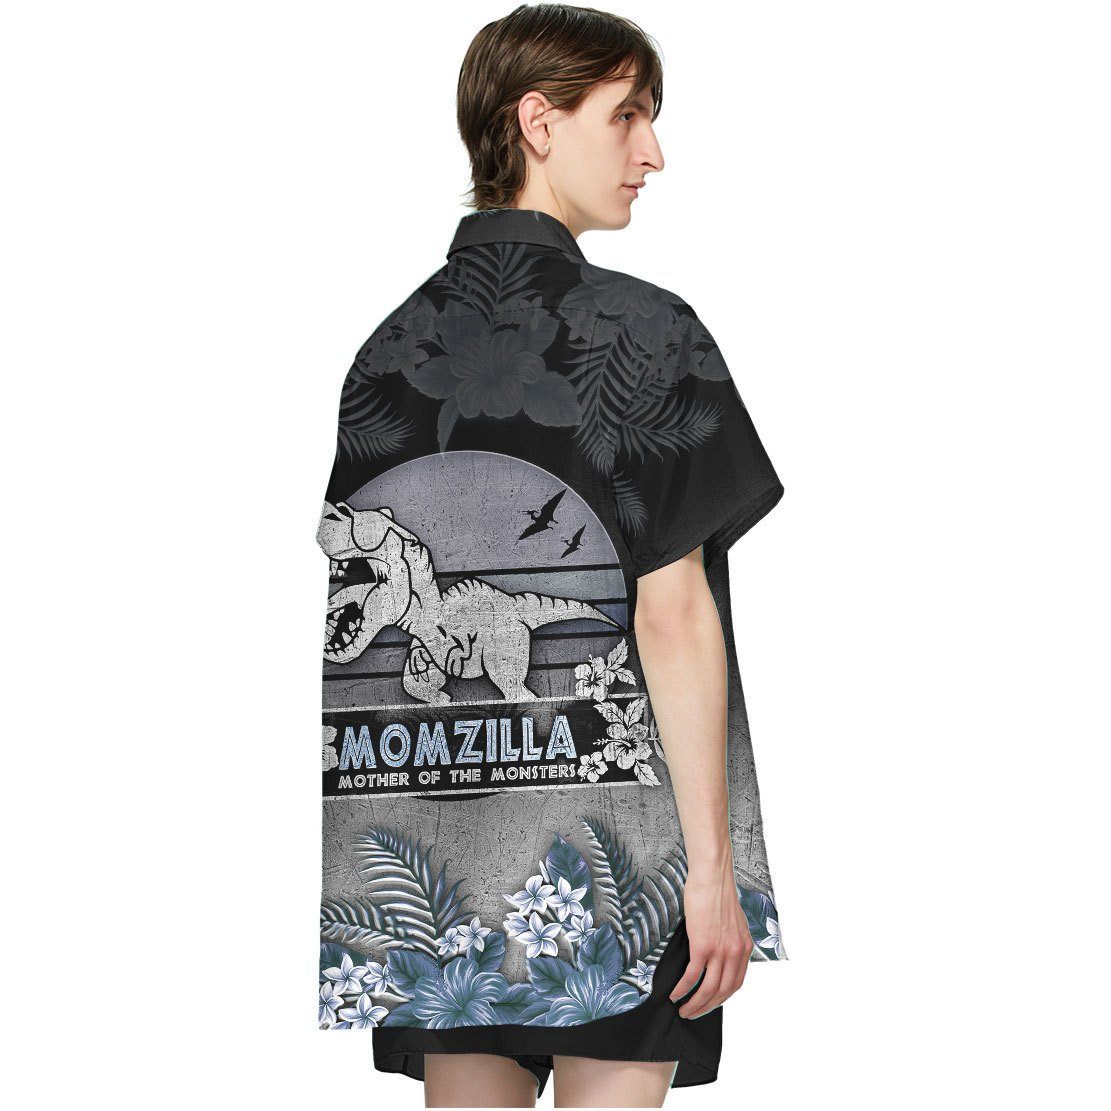 Gearhumans 3D Mozilla Mother of the monster Hawaii Shirt ZZ01041 Hawai Shirt 